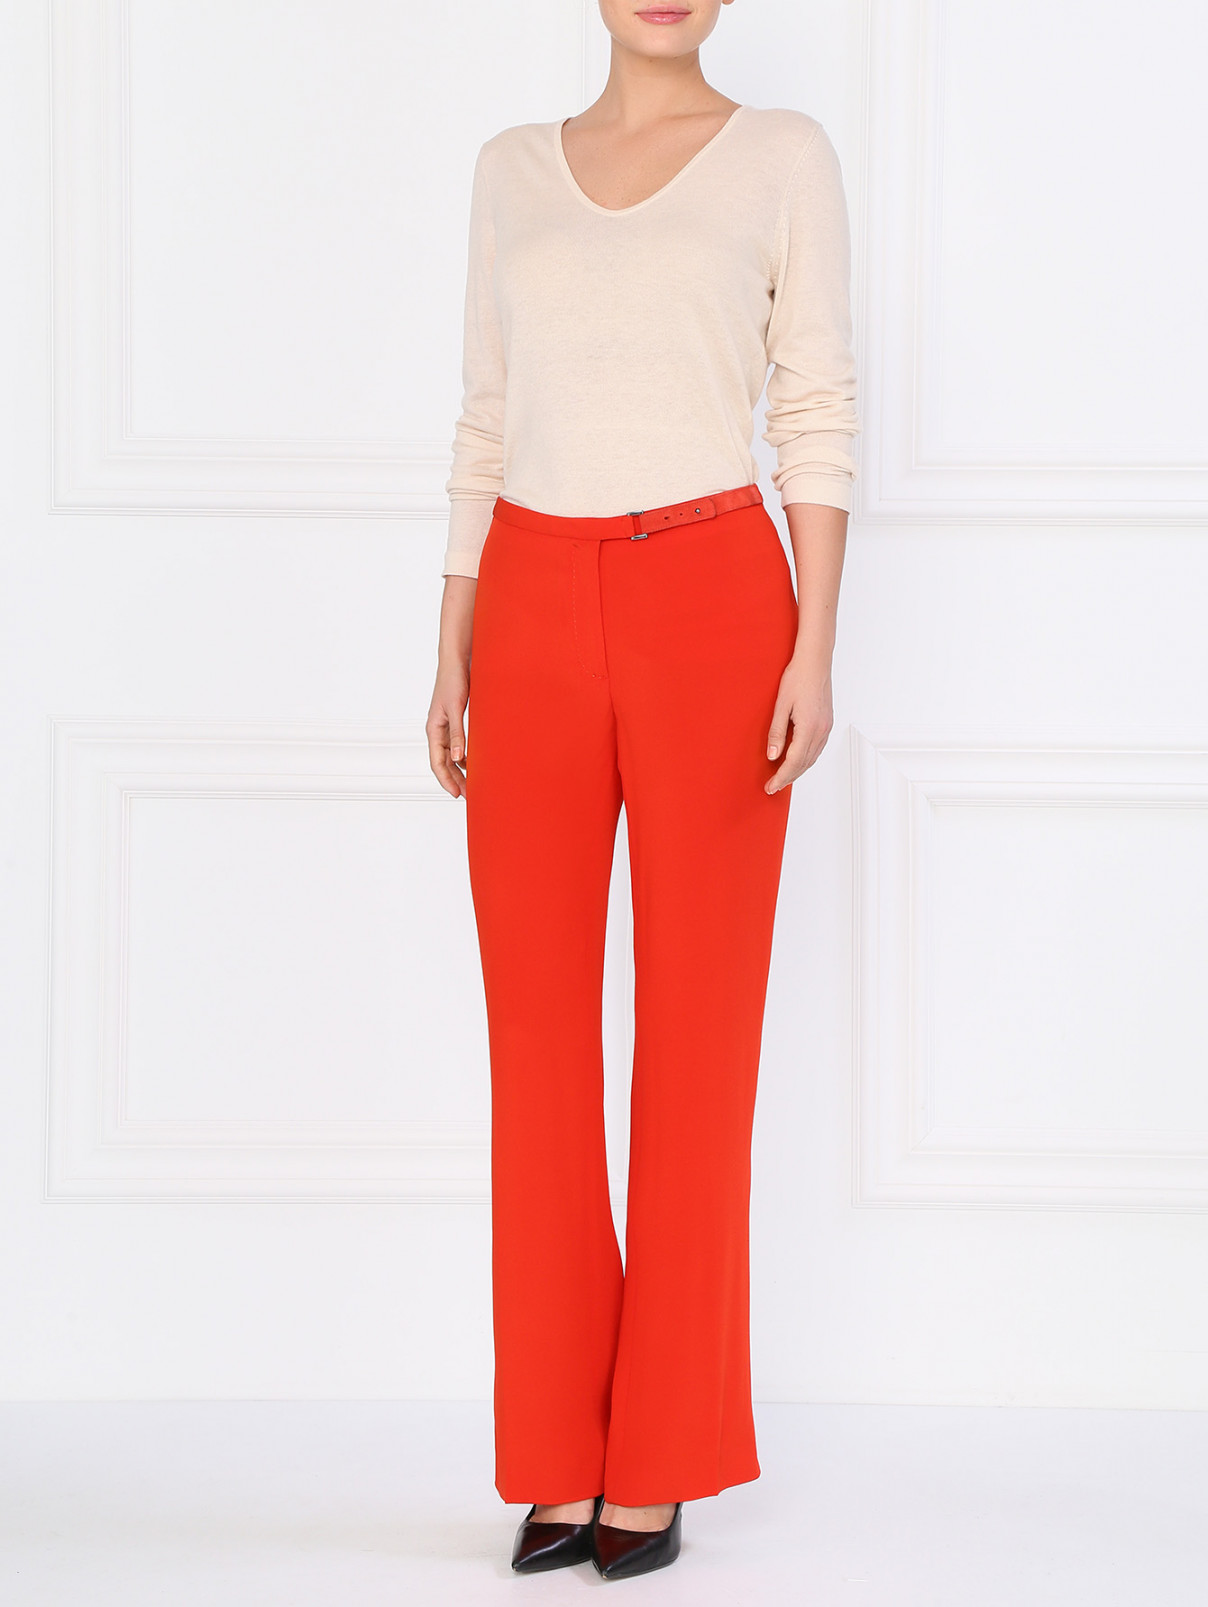 Классические прямые брюки с вшитым ремнем Costume National  –  Модель Общий вид  – Цвет:  Красный